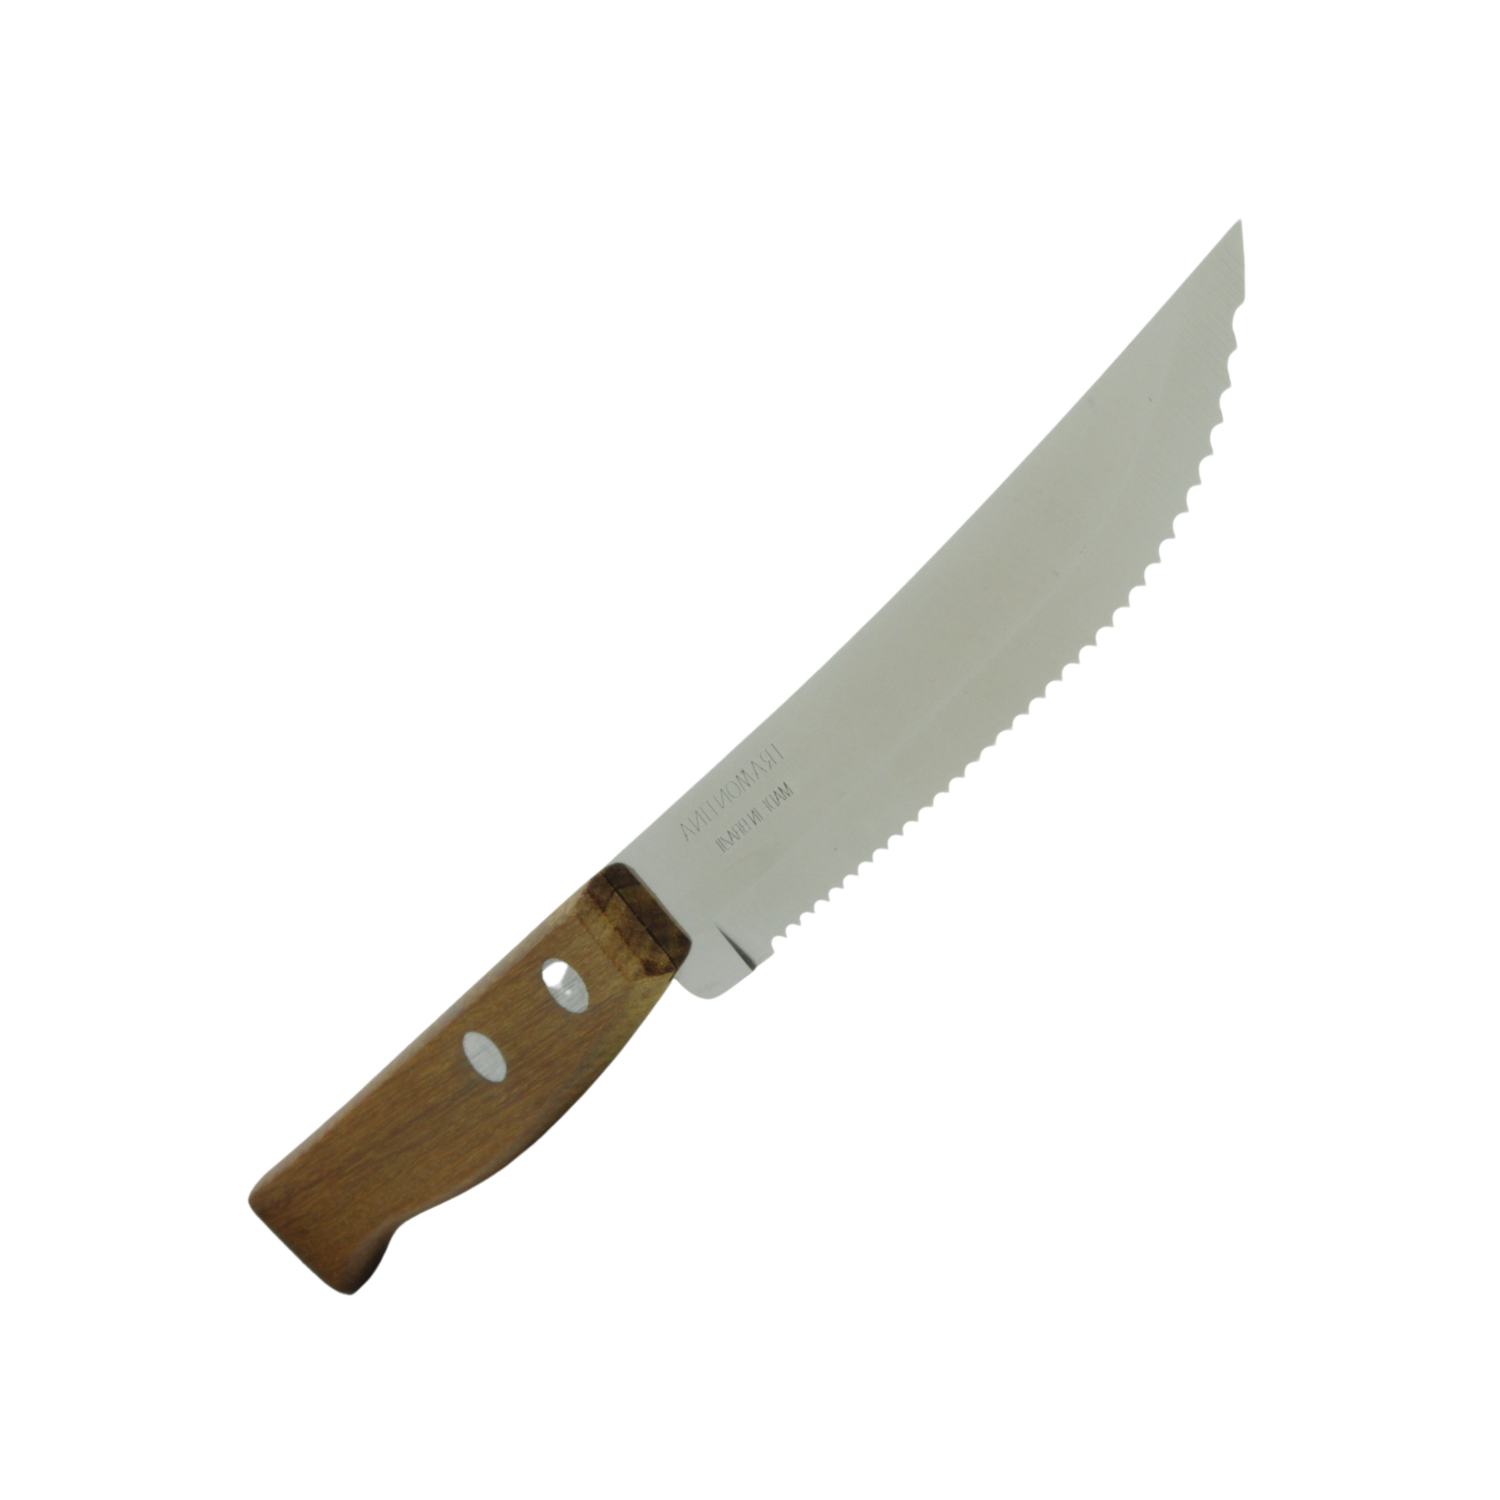 Cuchillo de sierra fina con mango de madera 0.85 euros